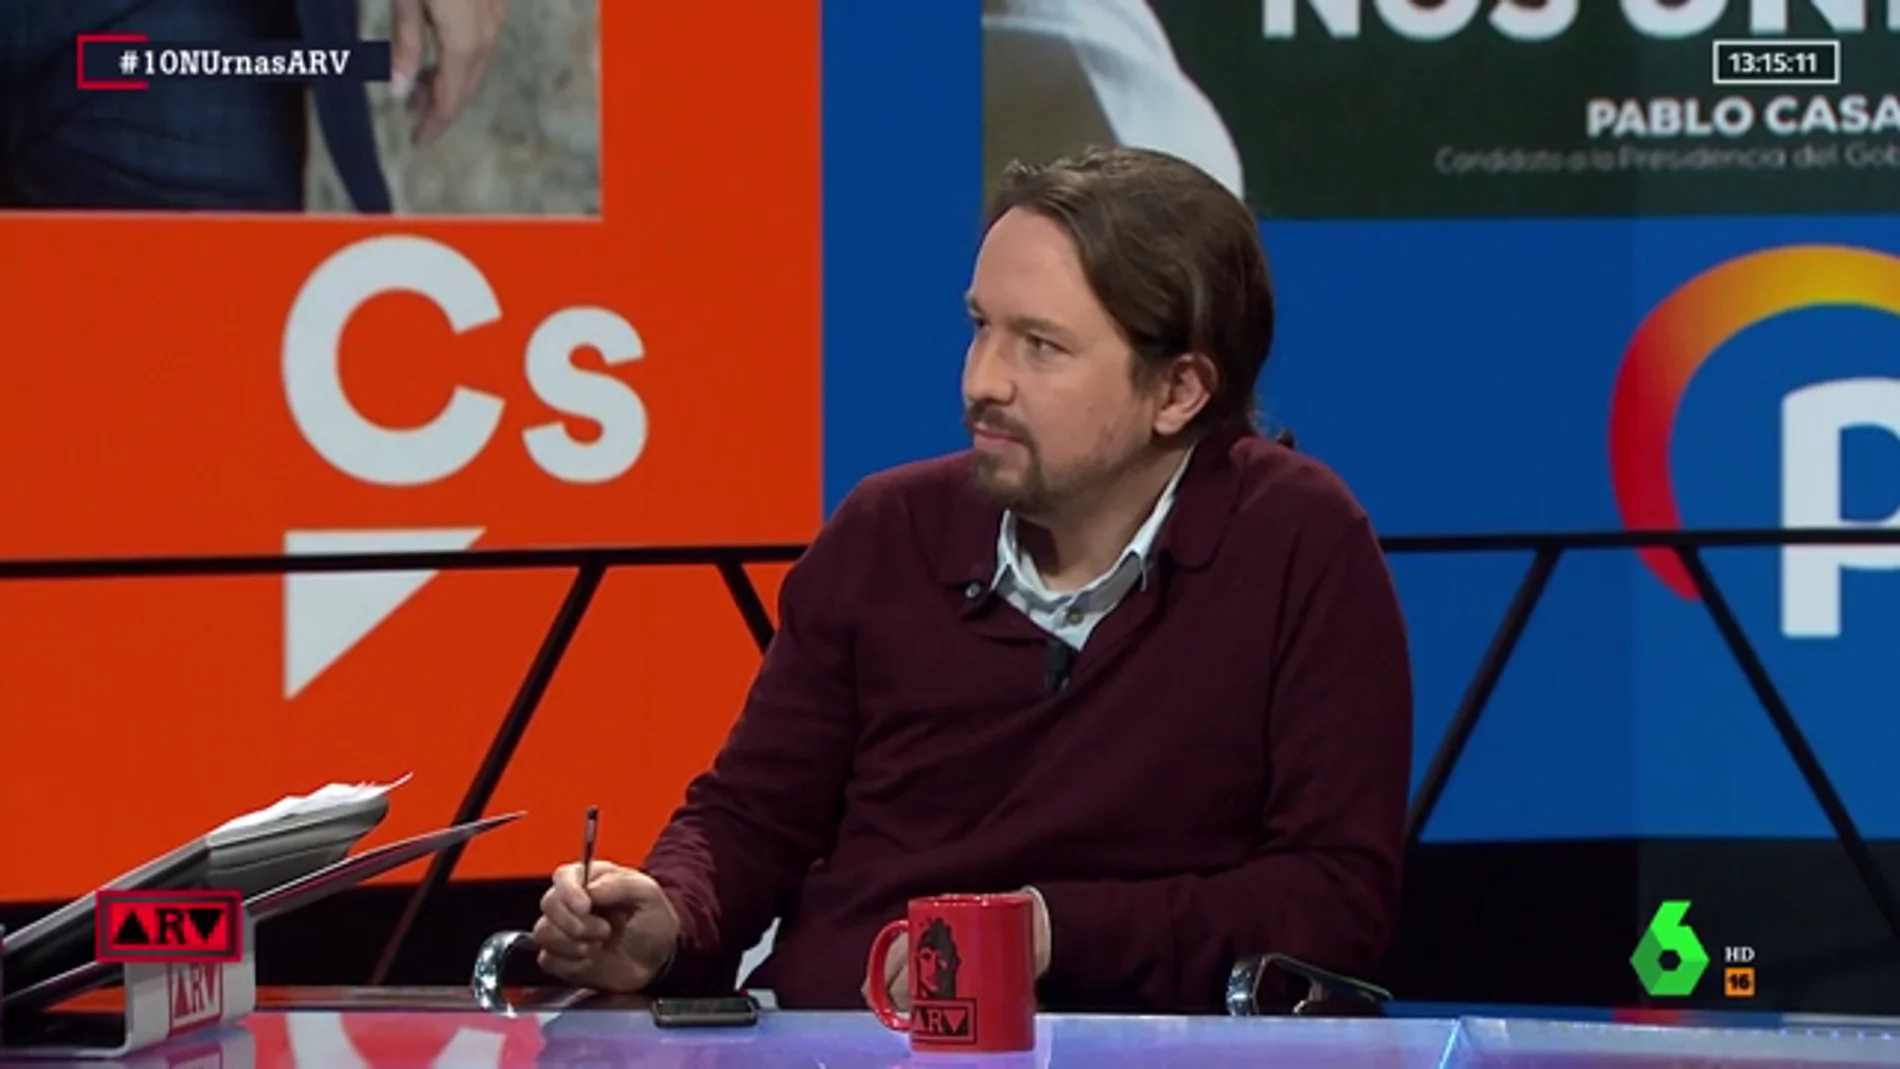 Pablo Iglesias: "Vamos a tender la mano al PSOE, a pesar de los reproches"